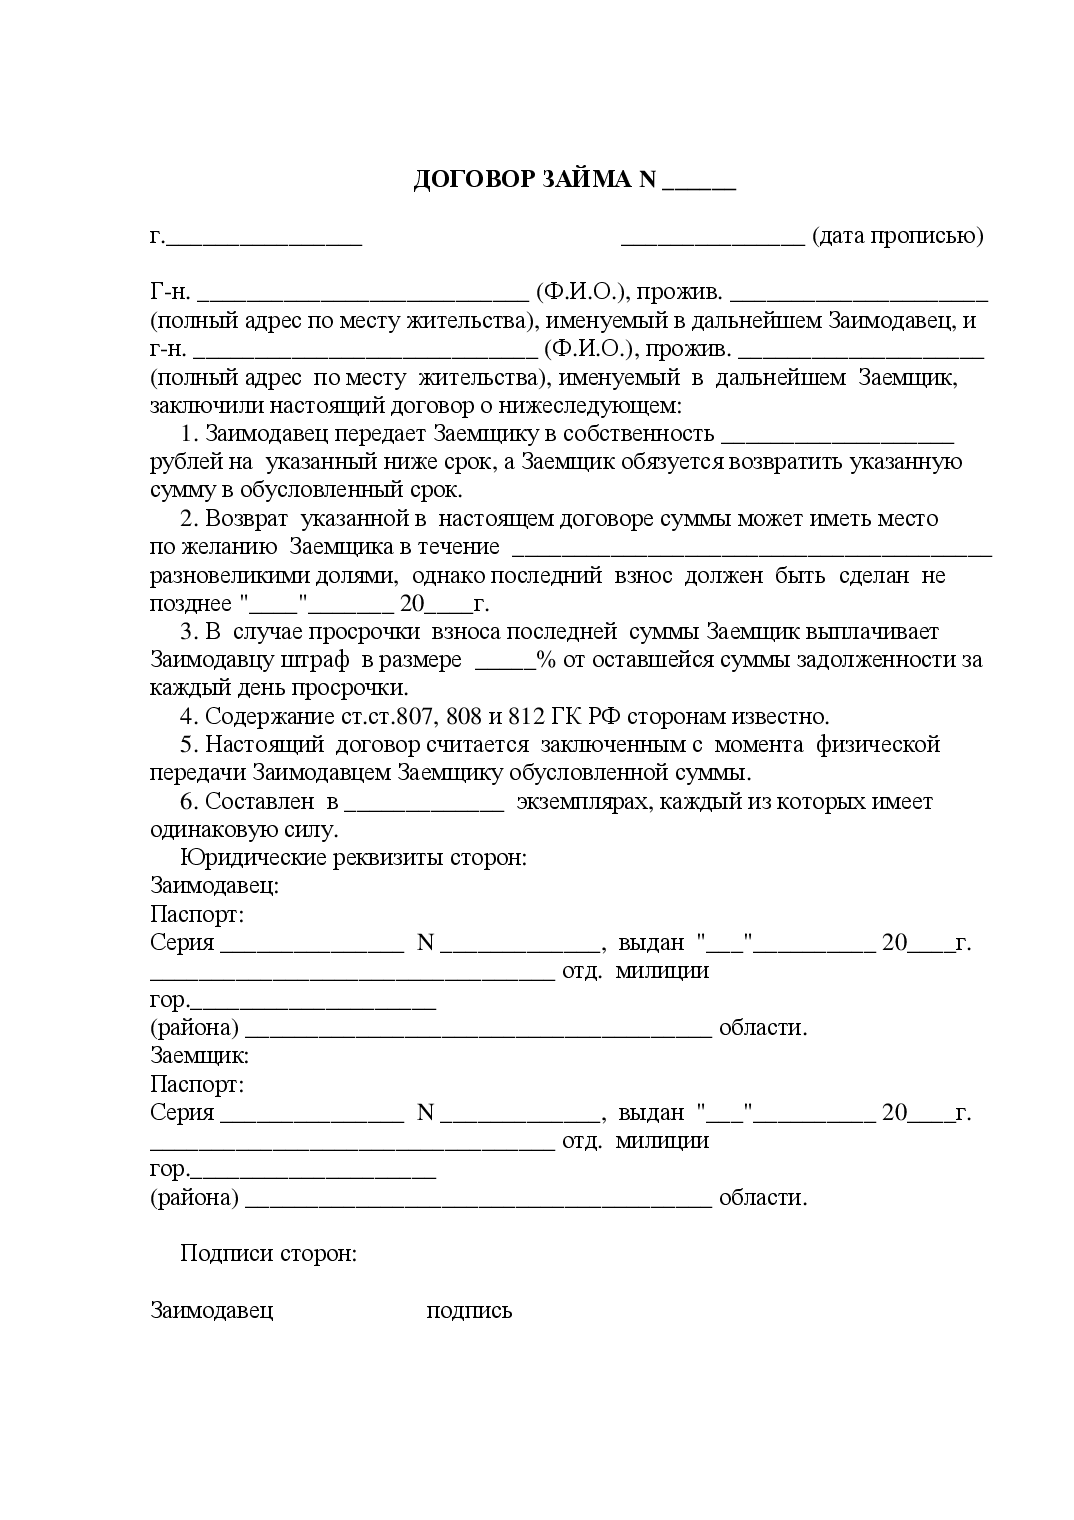 Договор о совместной деятельности - образец 2021 года. договор-образец.ру